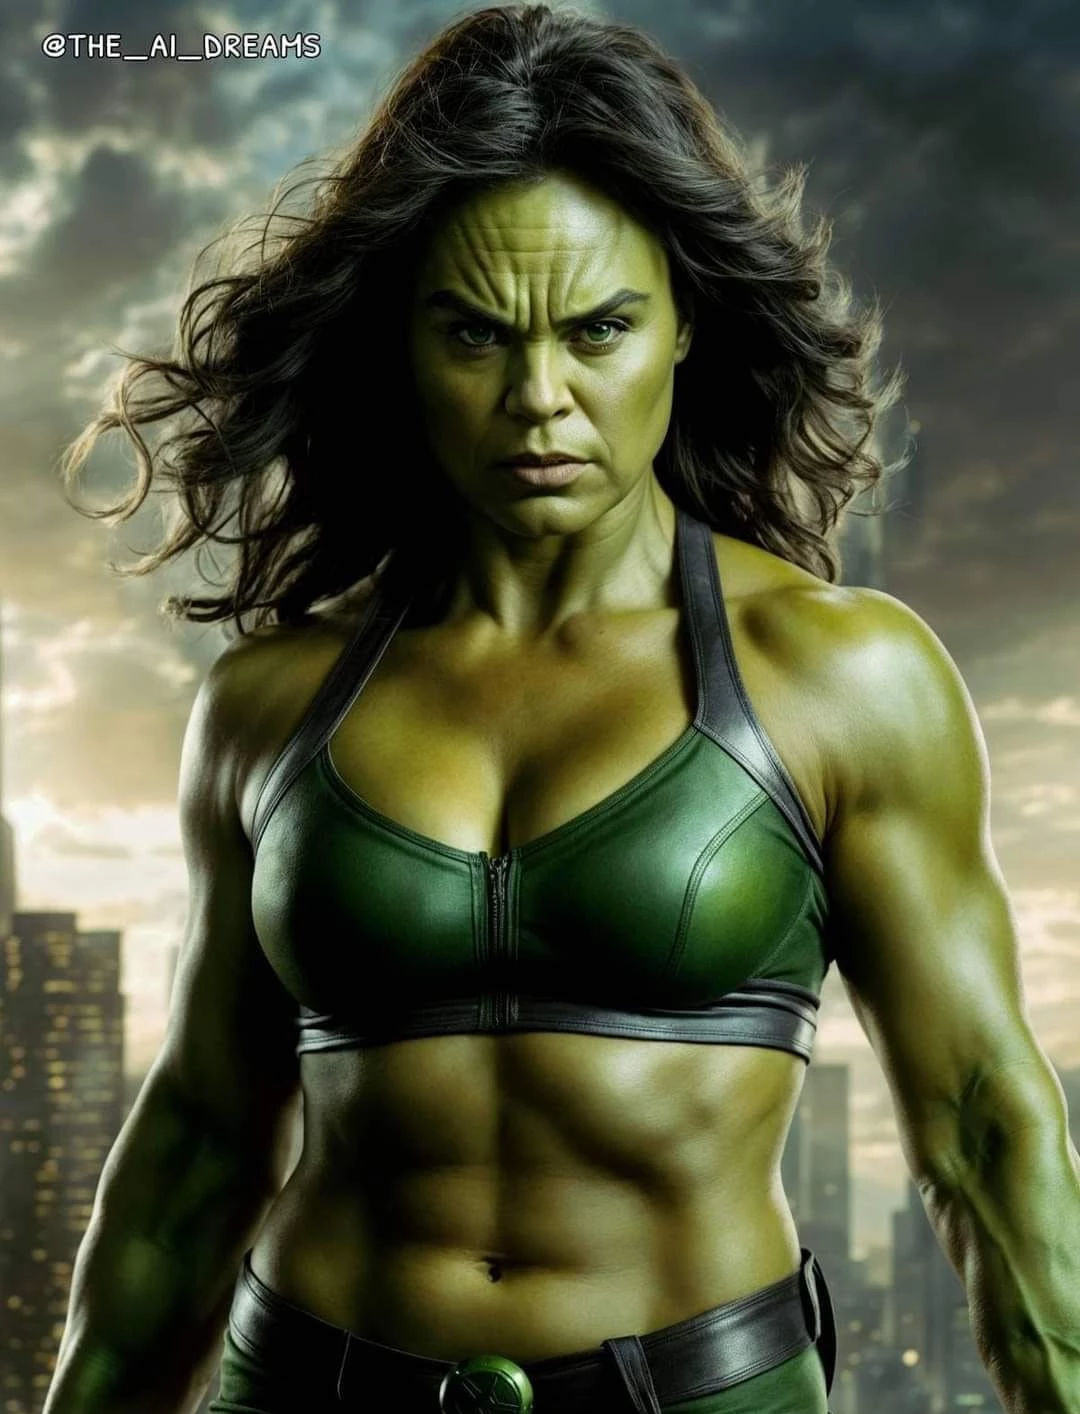 The She-Hulk We All Need